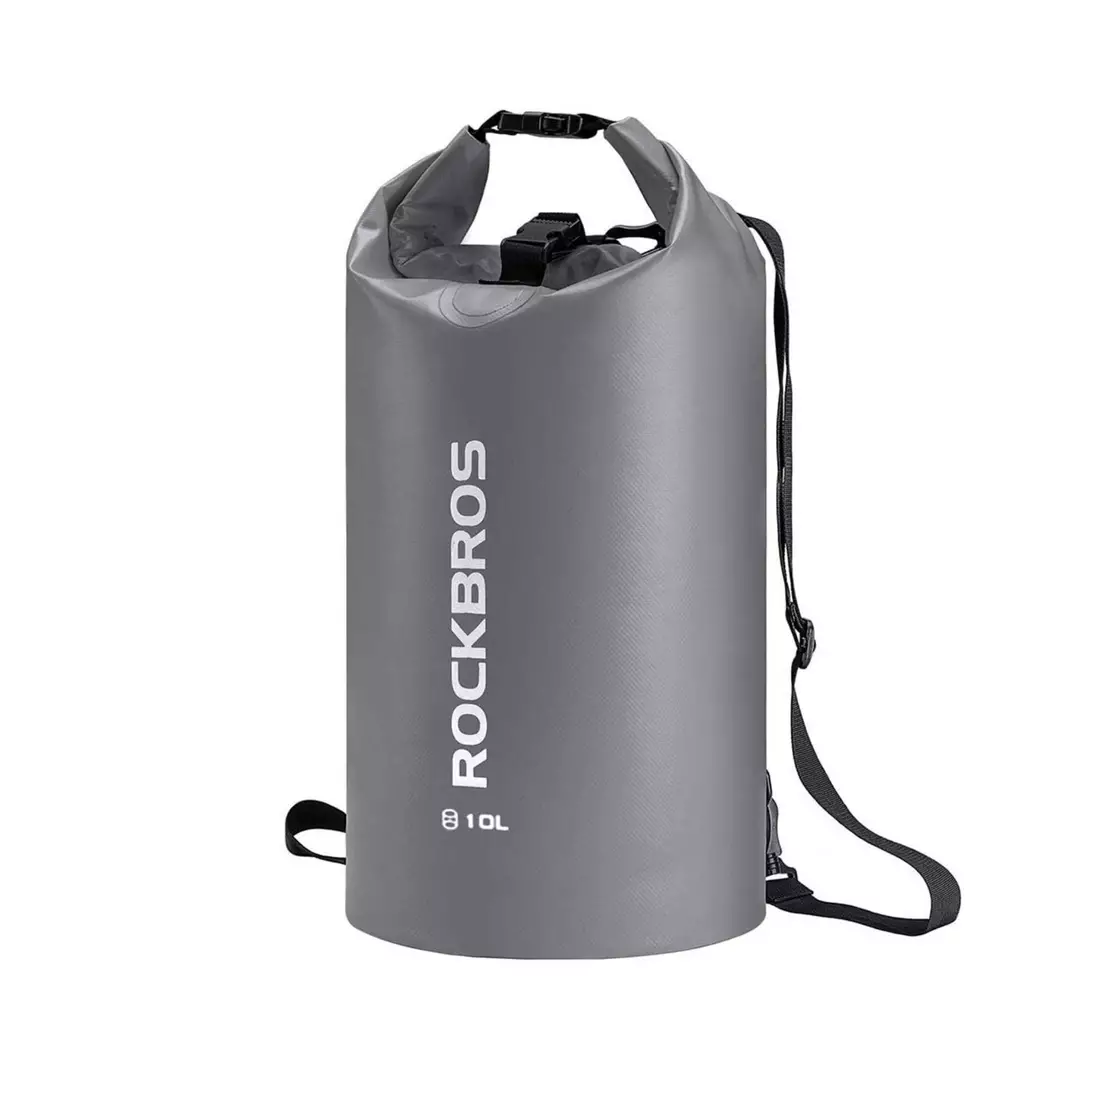 Rockbros wodoodporny plecak/worek 10L, szary ST-004GR